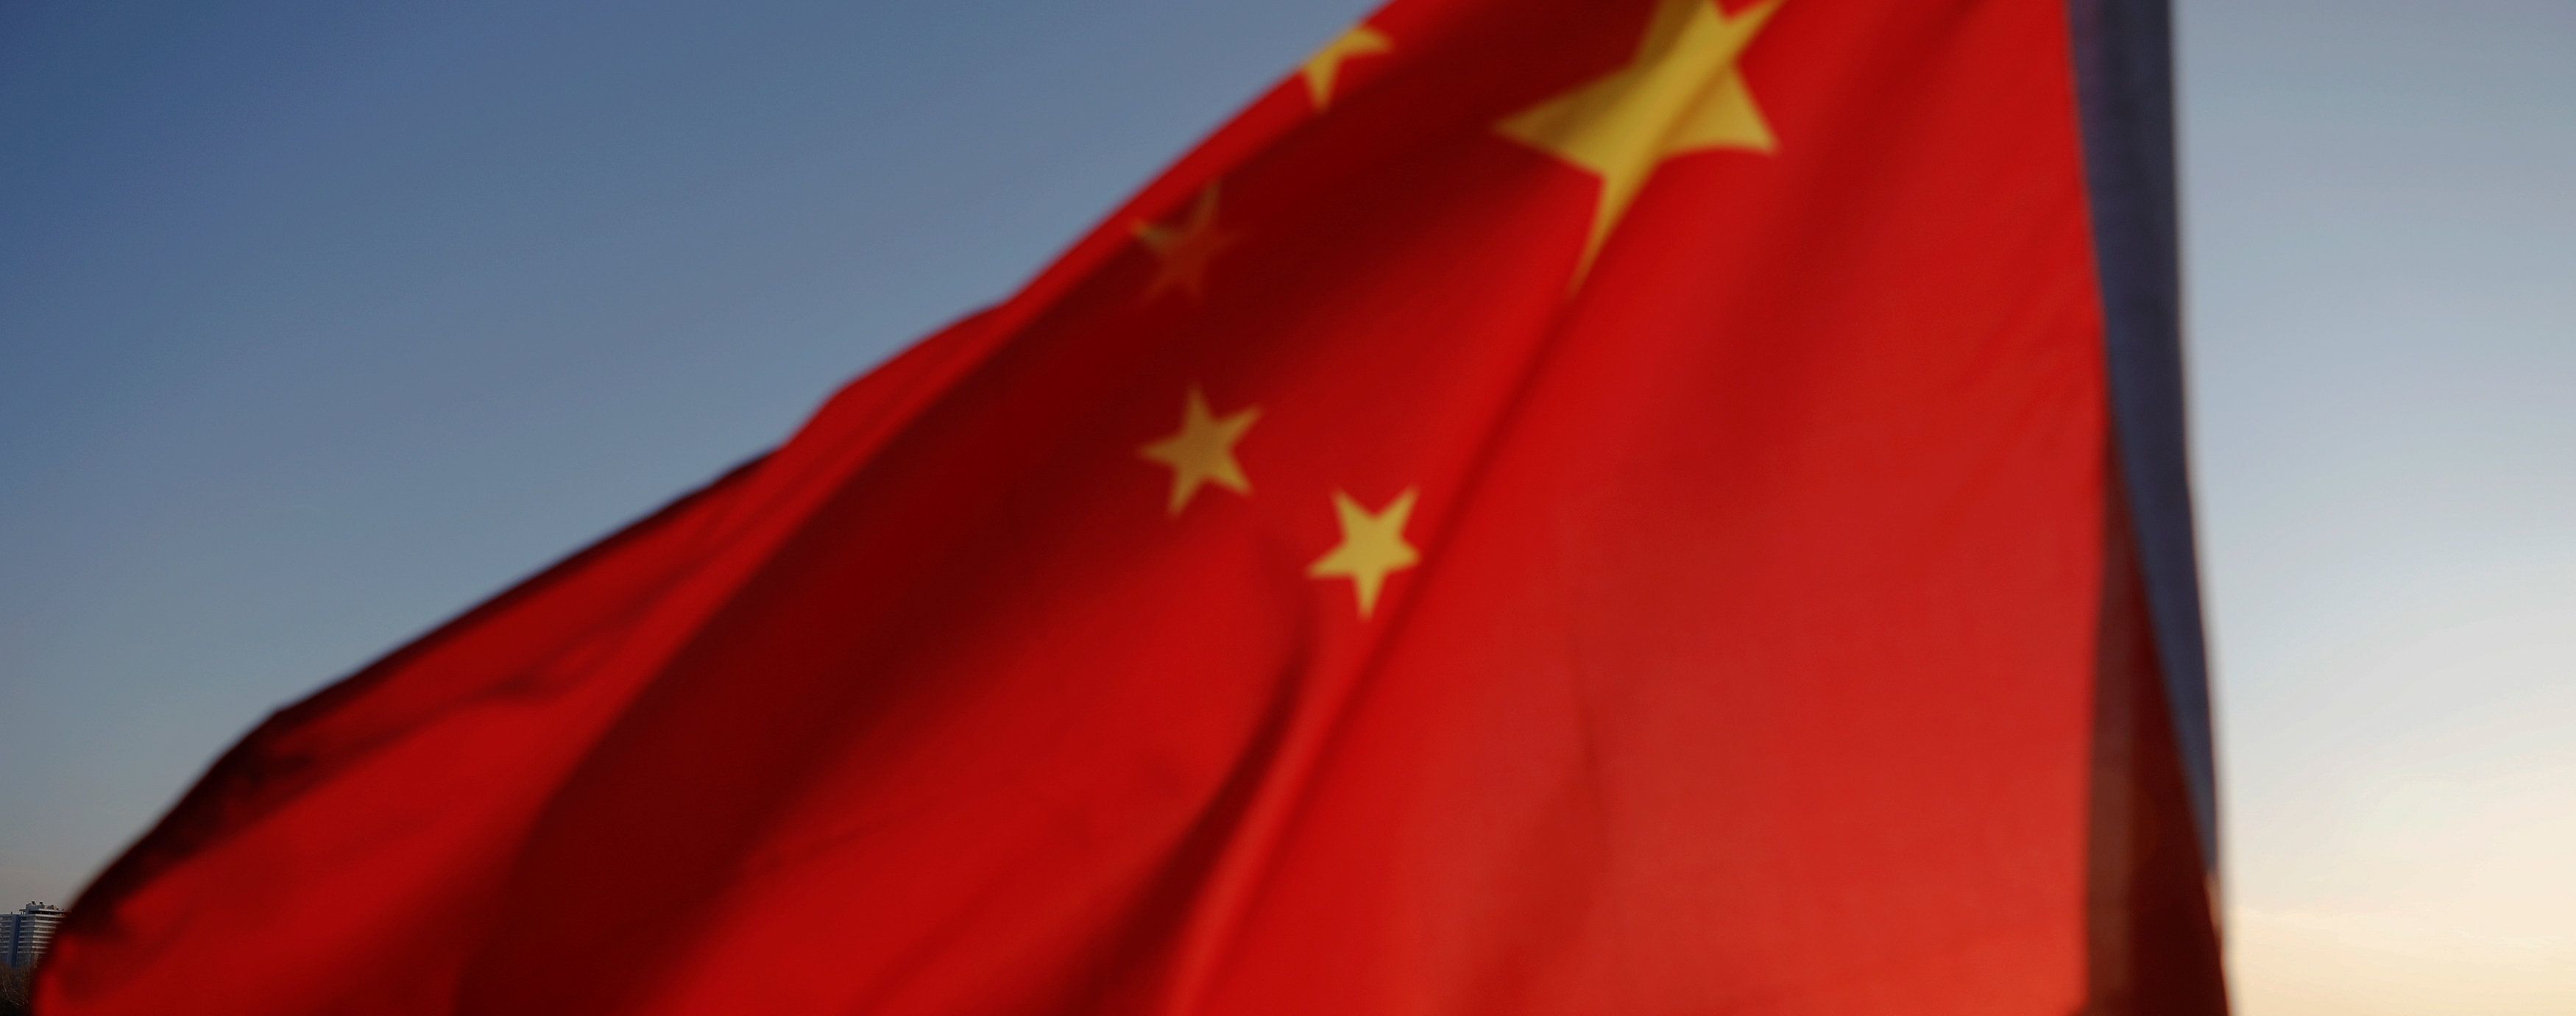 Нападение на школу в Китае: мужчина зарезал 7 учеников